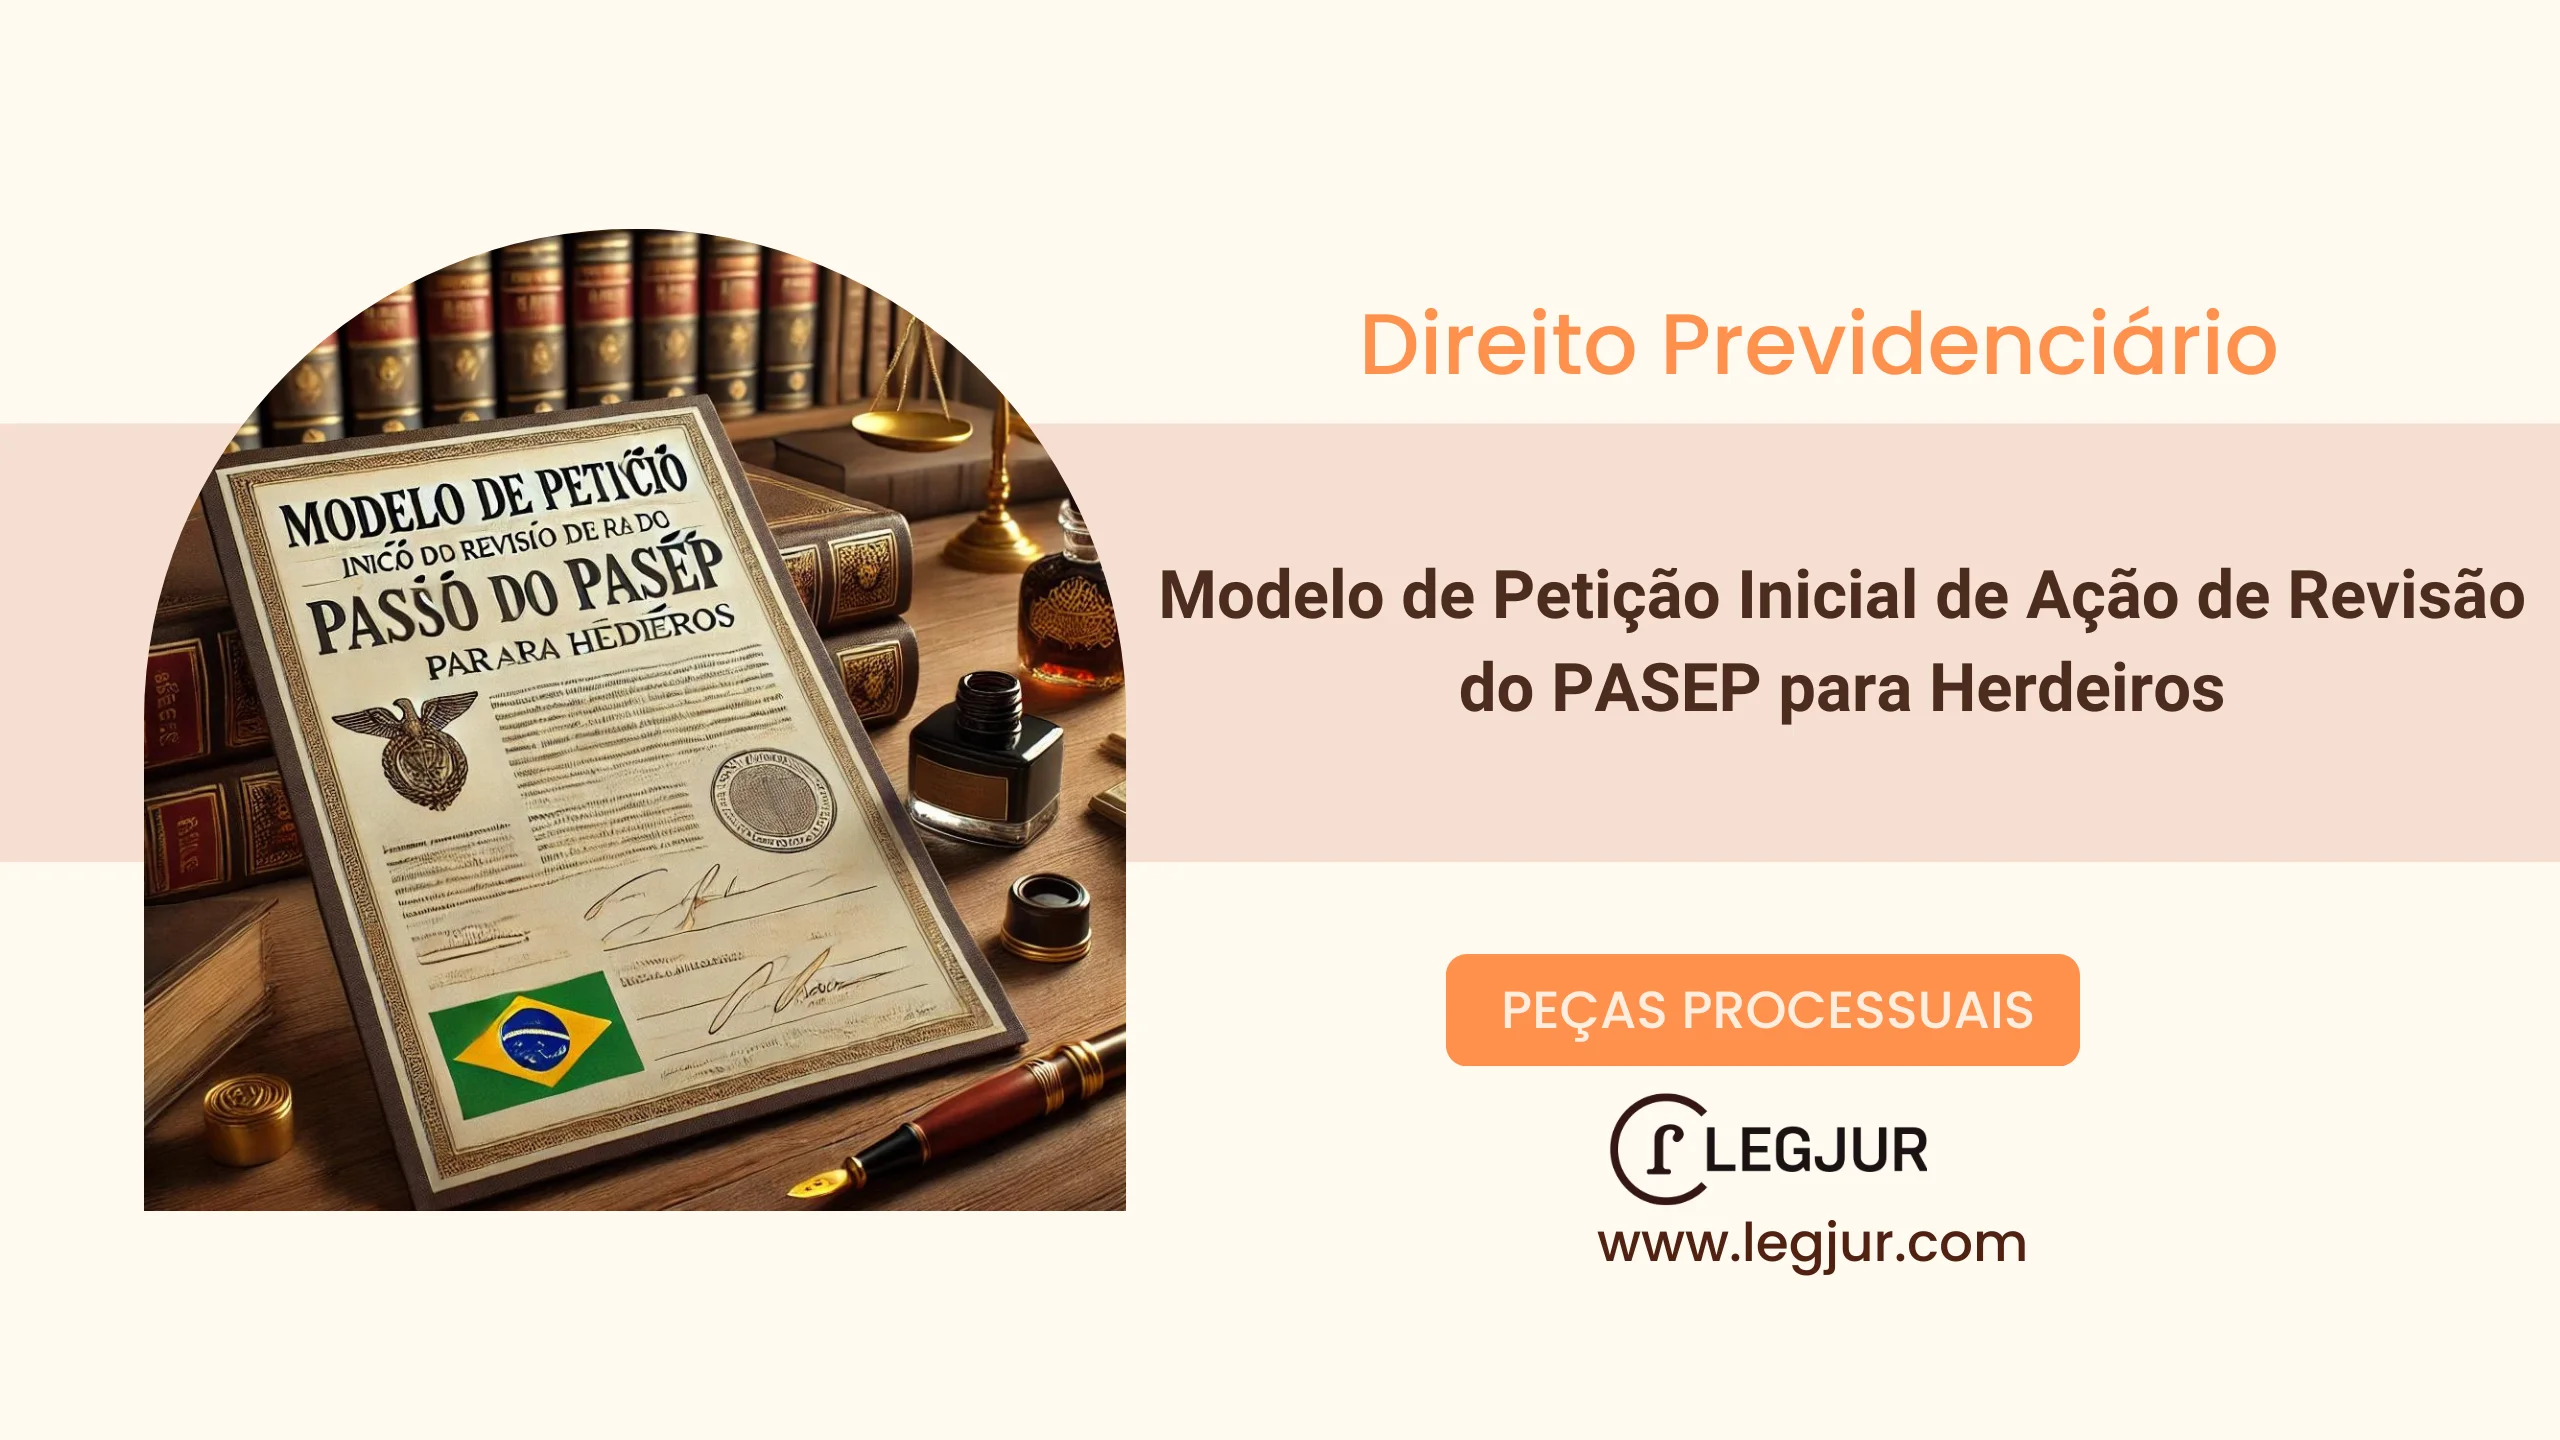 Modelo de Petição Inicial de Ação de Revisão do PASEP para Herdeiros